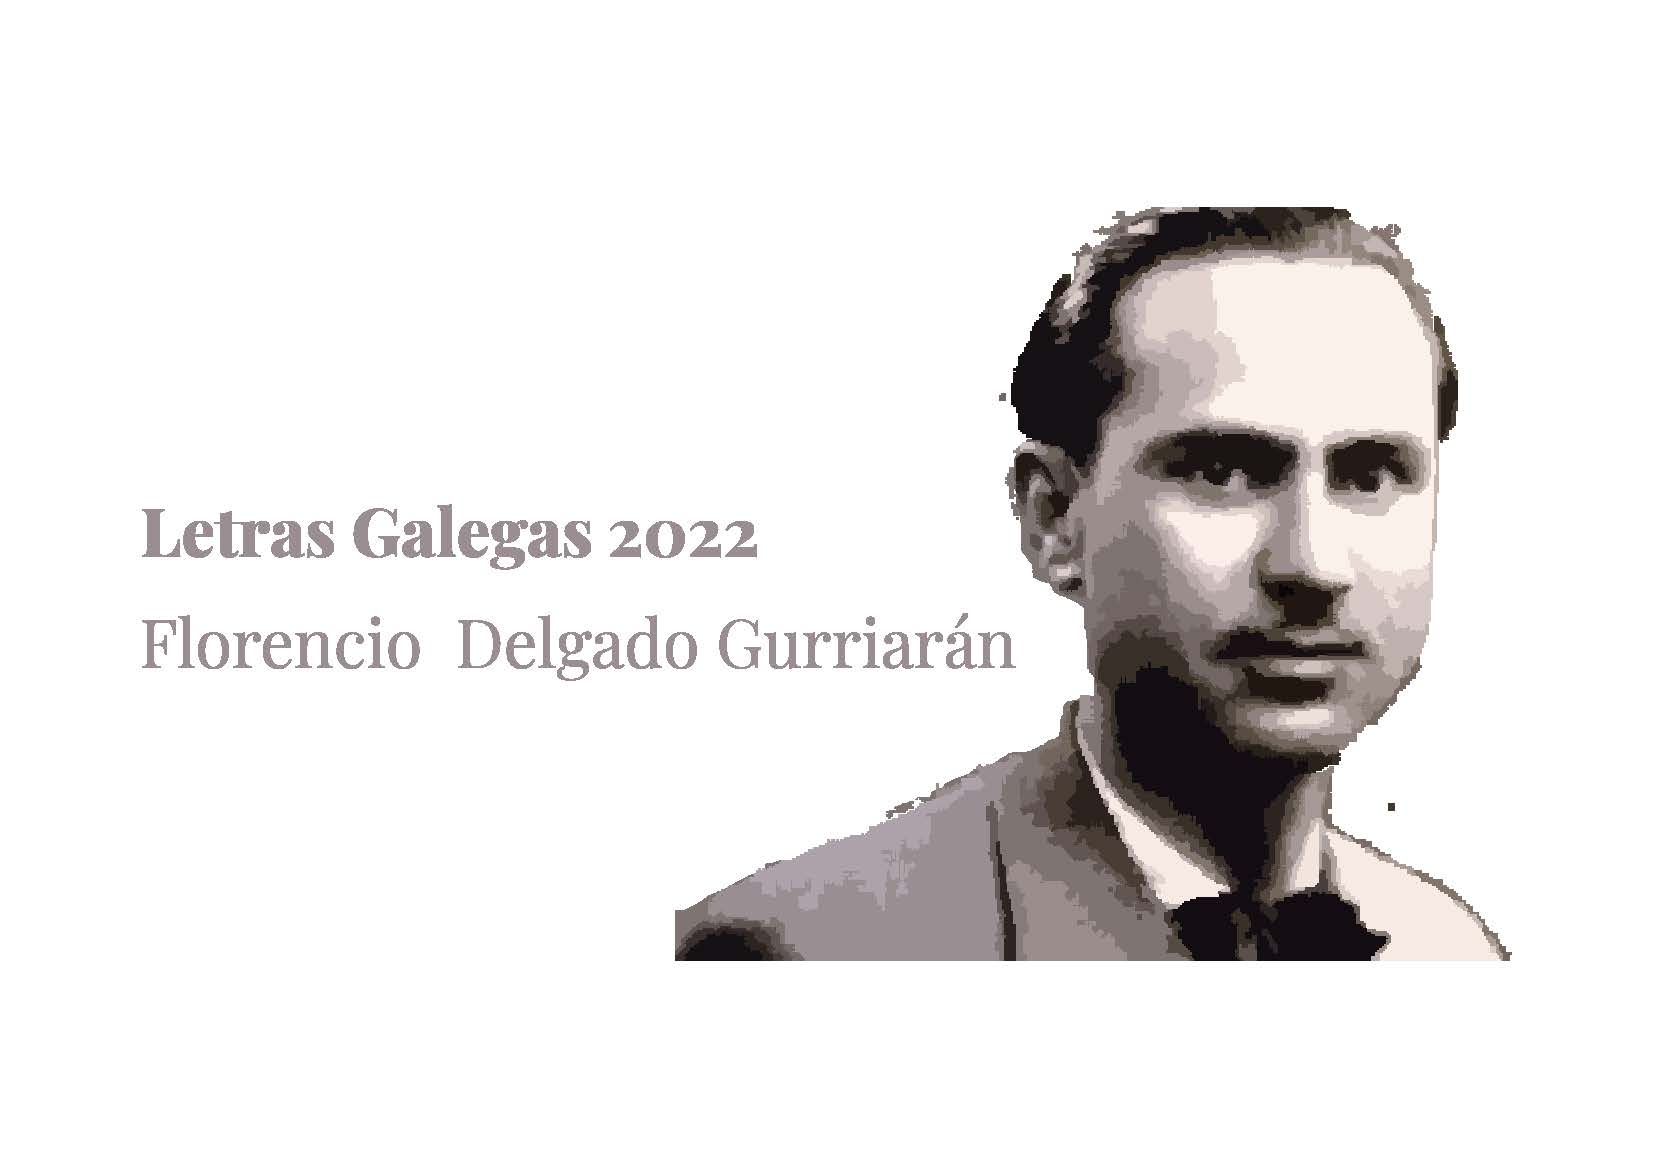 Letras galegas 2022: Florencio Delgado Gurriarán